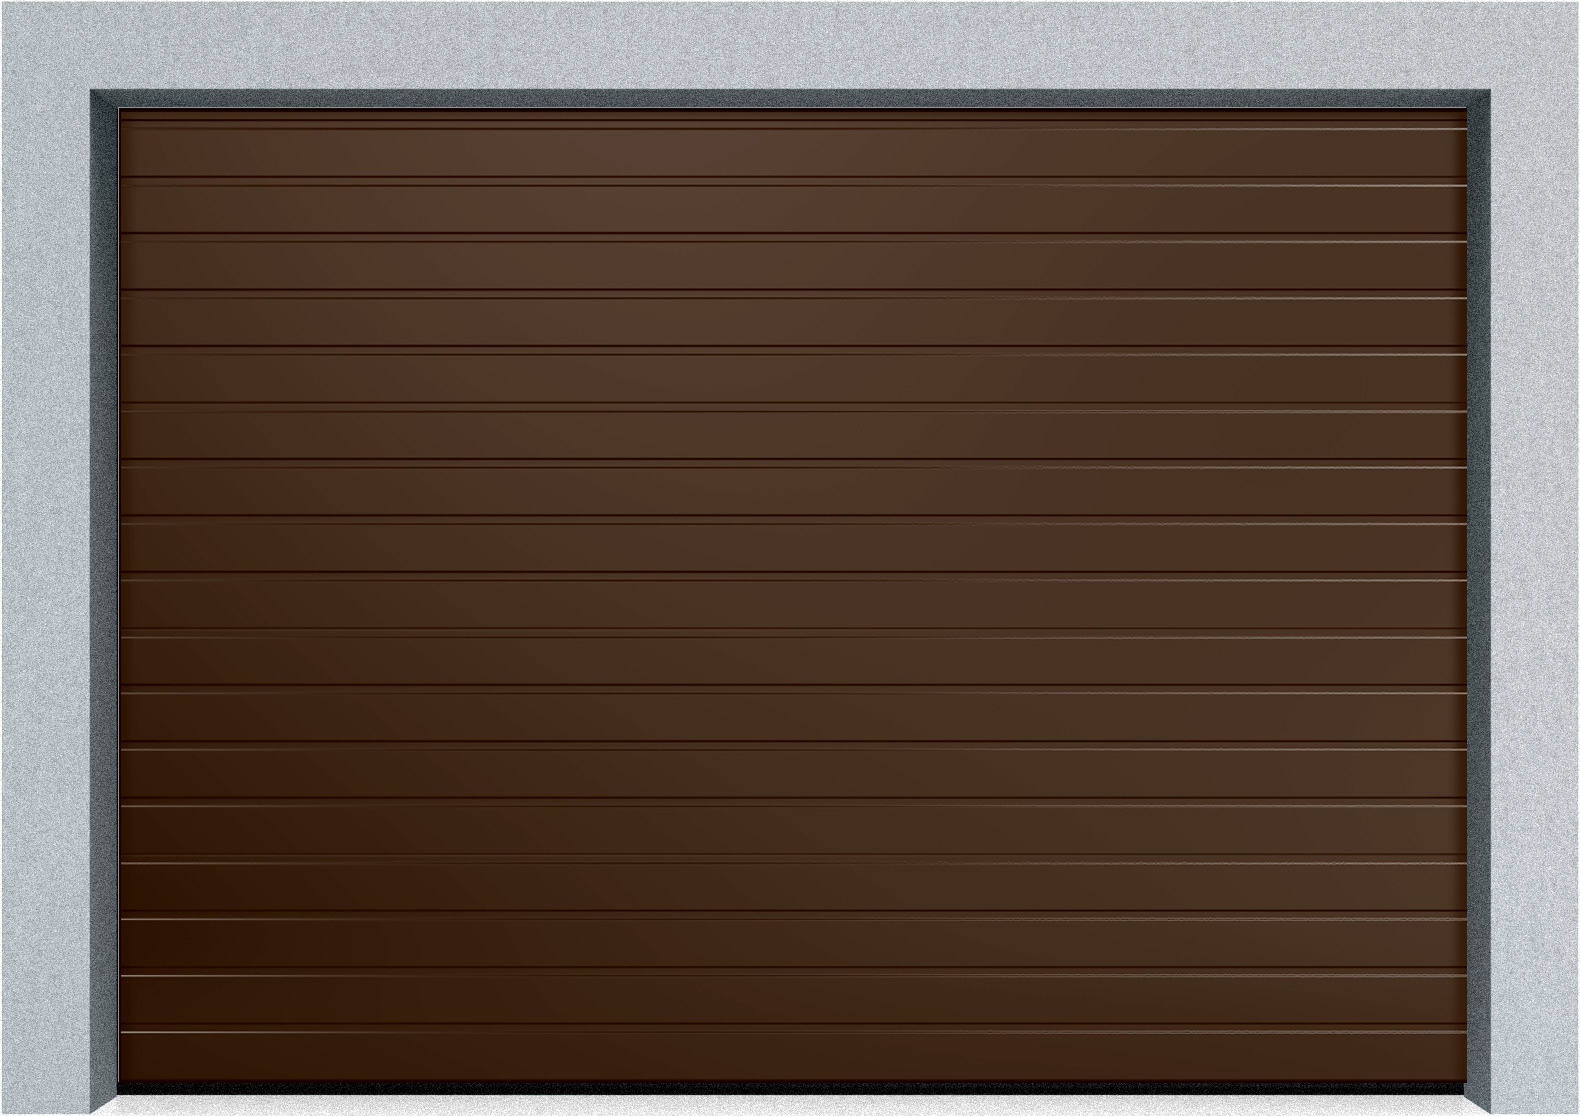  Автоматические секционные промышленные ворота DoorHan ISD ThermalPro 3400x5000 S-гофр, M-гофр, Микроволна стандартные цвета, фото 2 